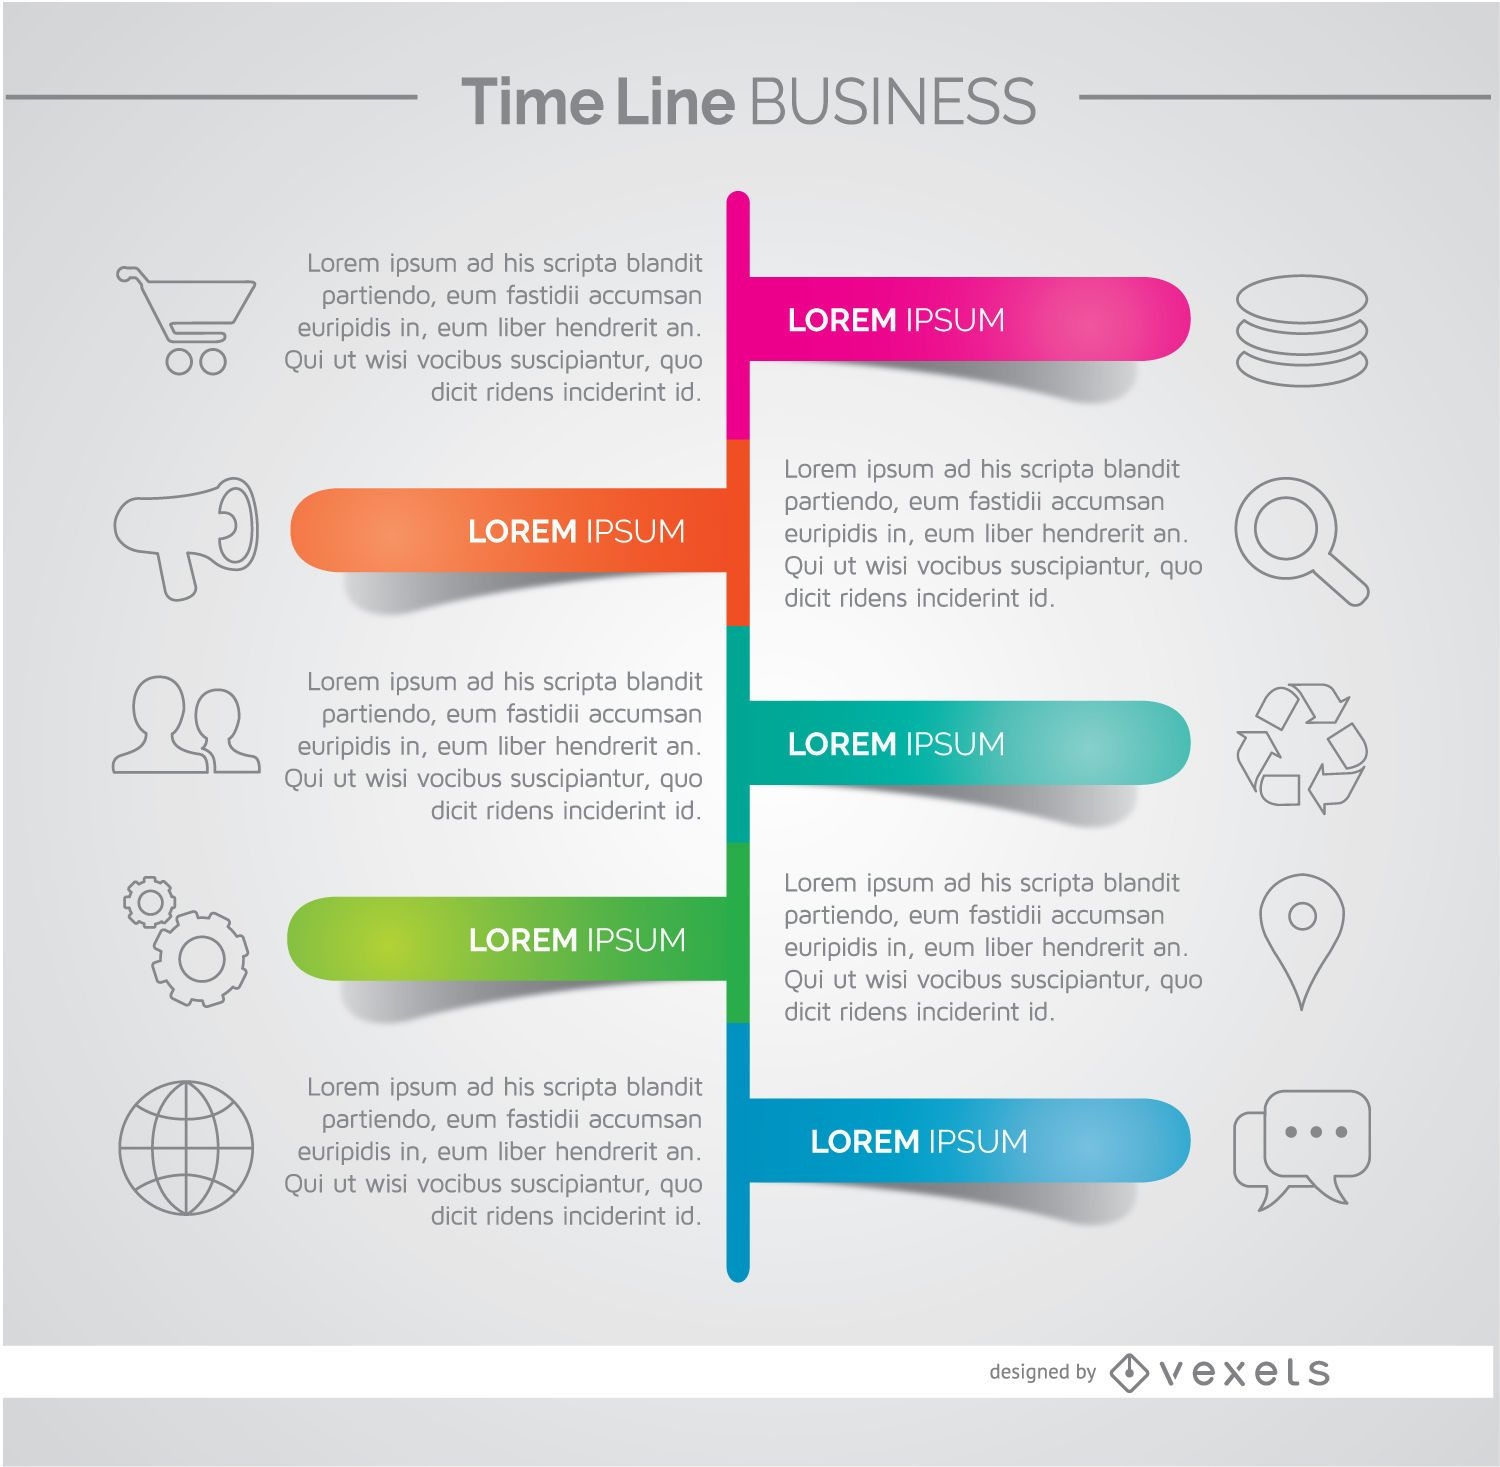 Infográfico de desenvolvimento de negócios da linha do tempo